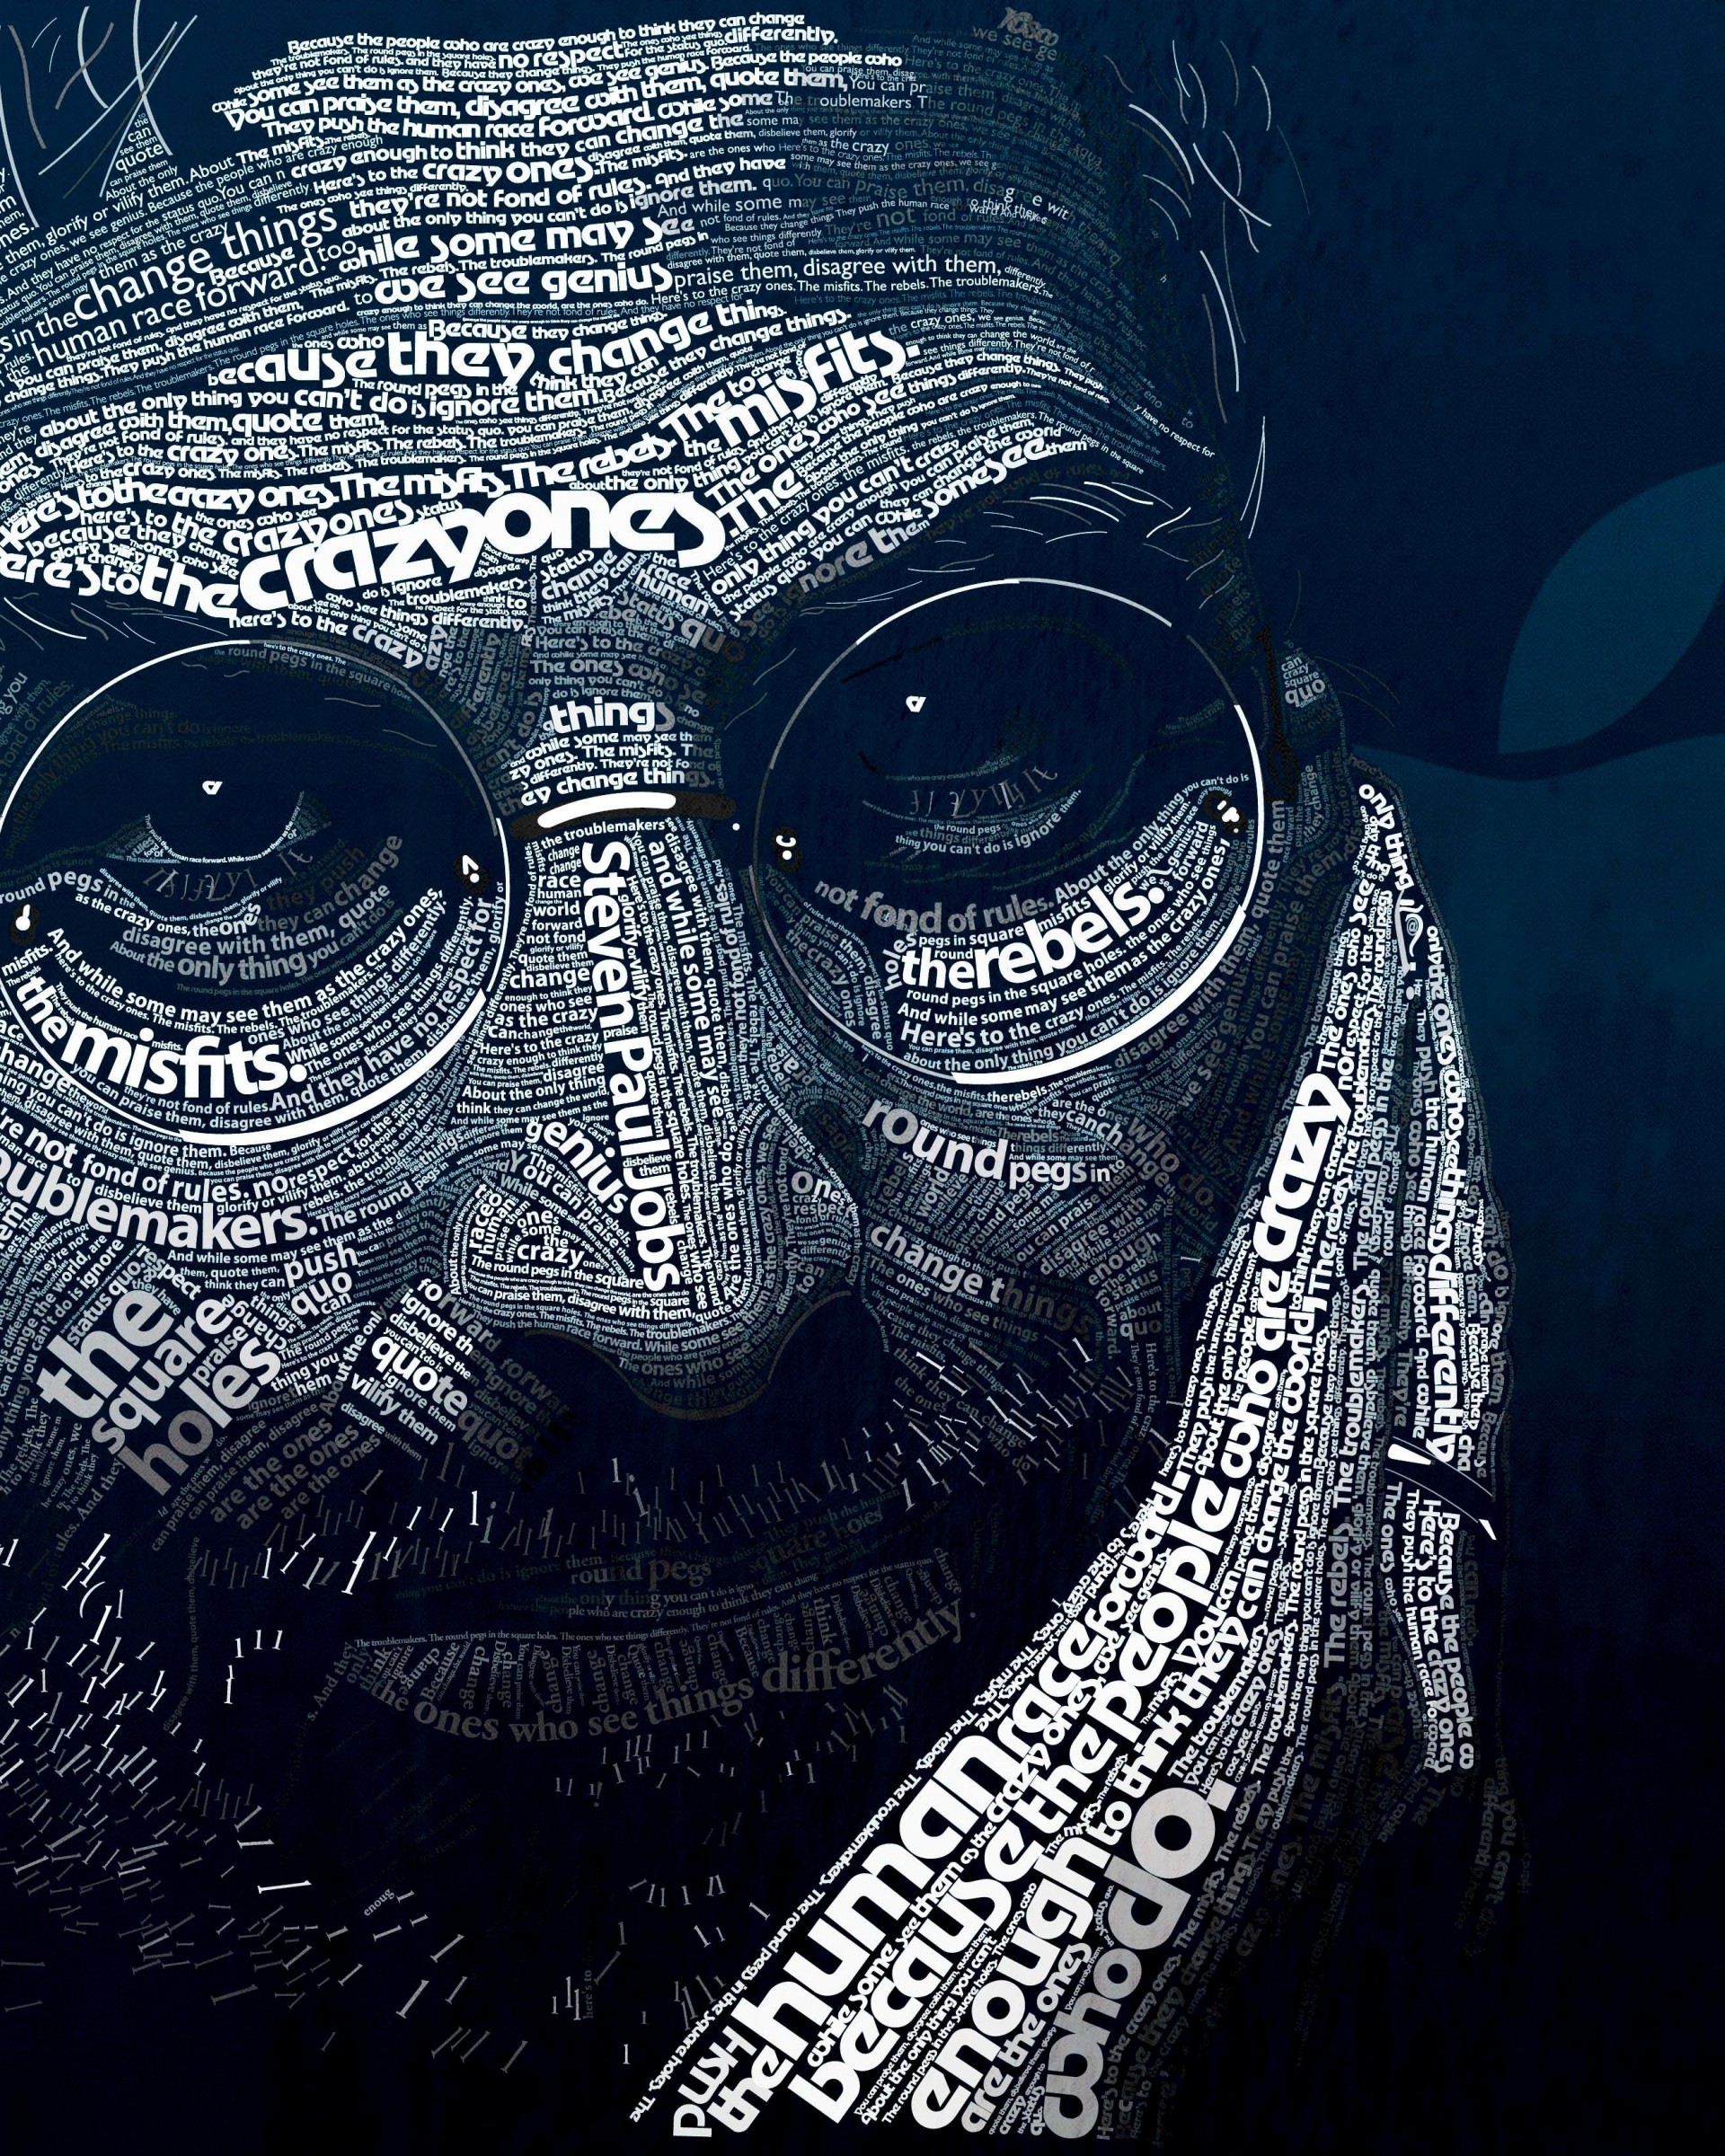 Steve Jobs Typographic Portrait Wallpaper for Google Nexus 7